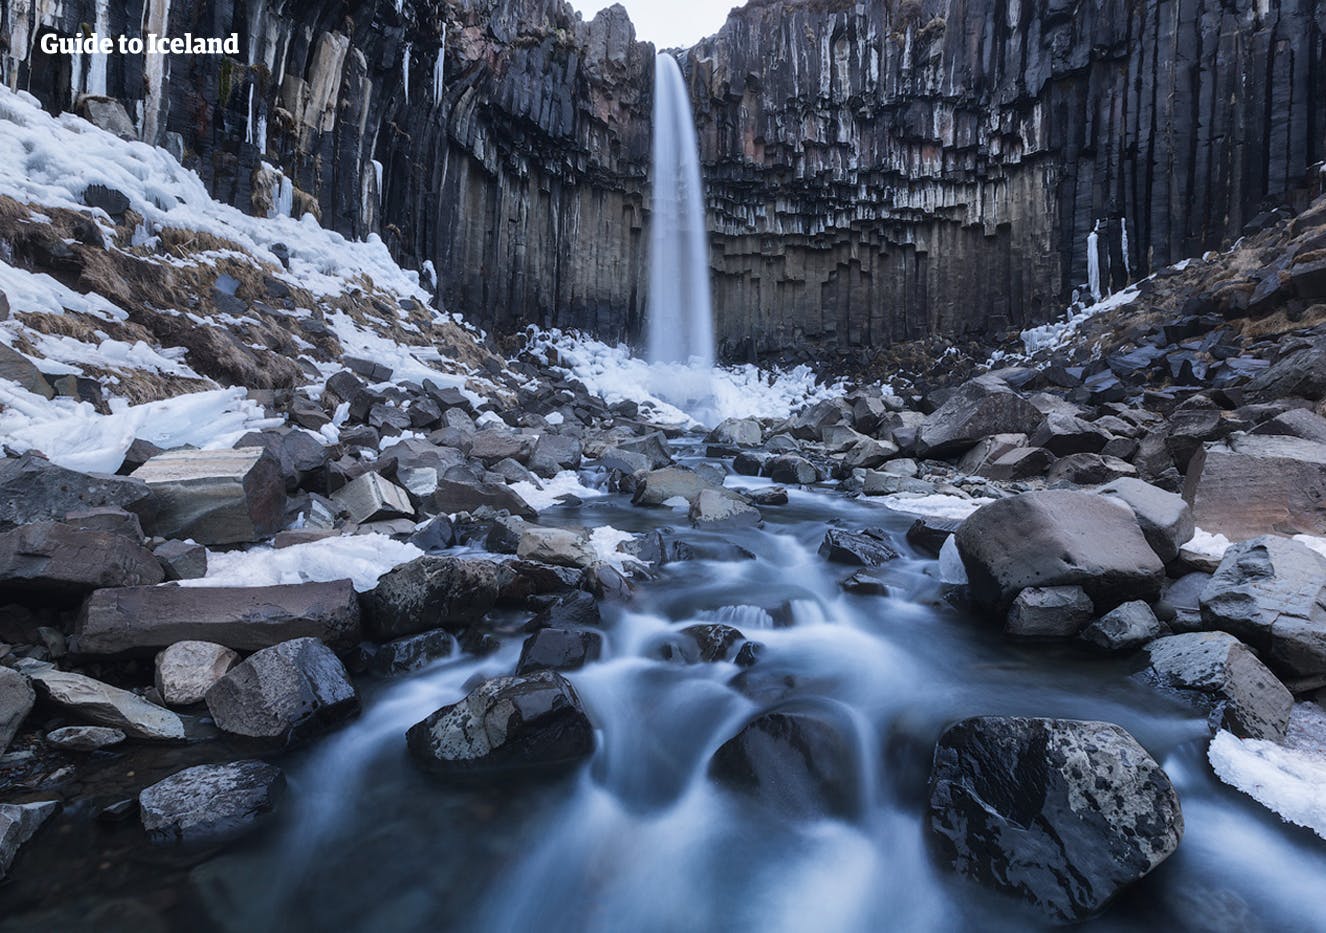 Sześciokątne czarne kolumny otaczają wodospad Svartifoss w południowej Islandii, przedstawiony tutaj zimą.